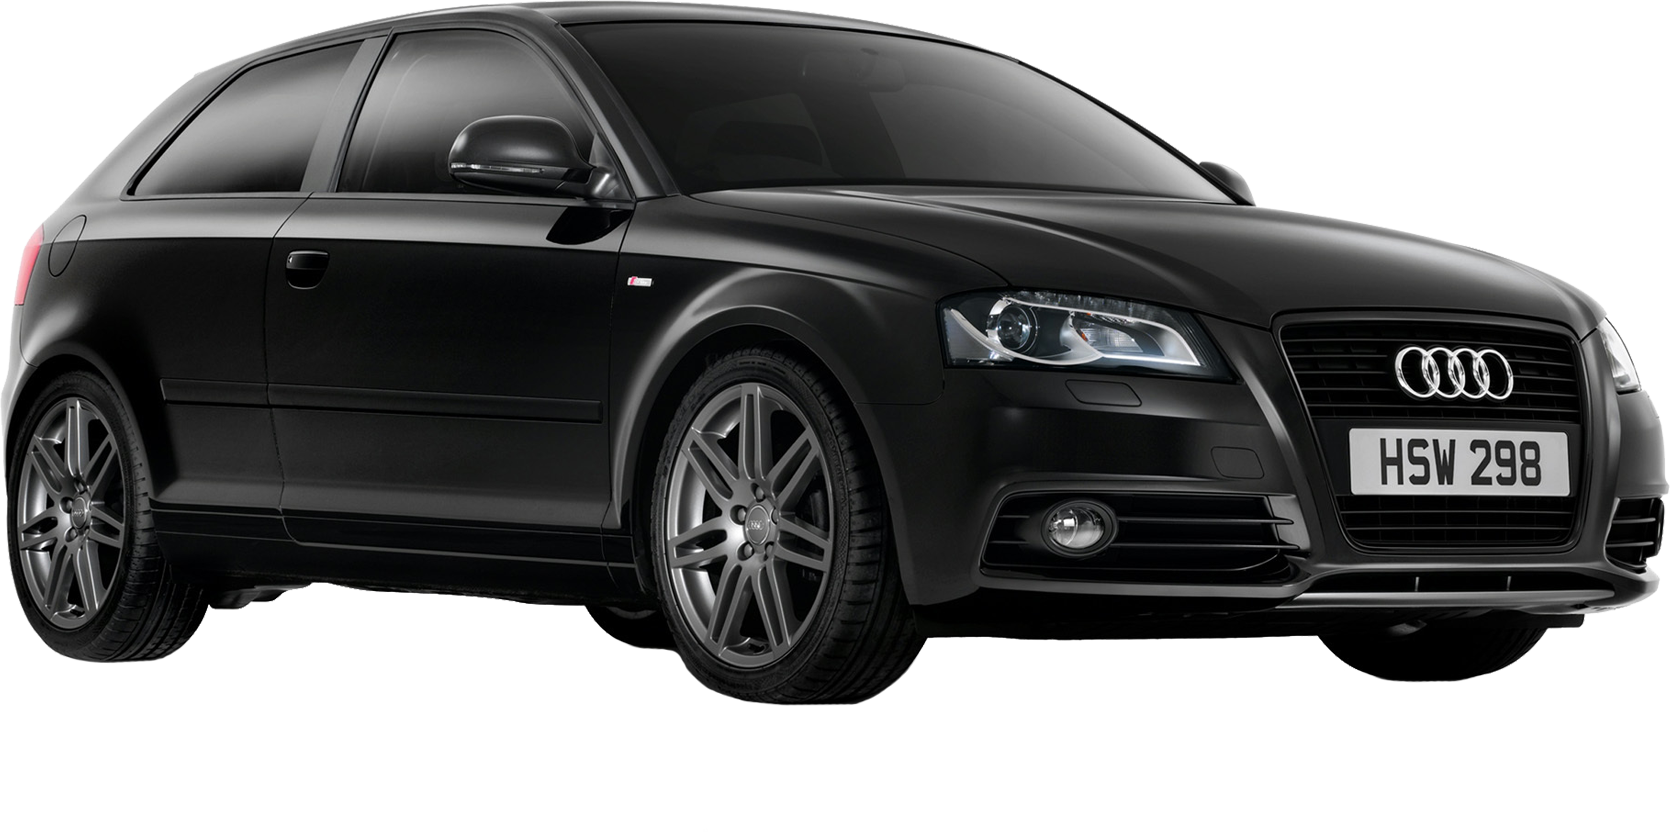 Xe Audi màu đen trong suốt là biểu tượng của sự hoàn hảo và đẳng cấp. Qua những hình ảnh này, bạn sẽ chiêm ngưỡng được sự tinh tế và sáng tạo của mẫu xe này với kiểu dáng khỏe khoắn và đầy mạnh mẽ. Đừng bỏ lỡ cơ hội để đến và khám phá những hình ảnh tuyệt đẹp này.